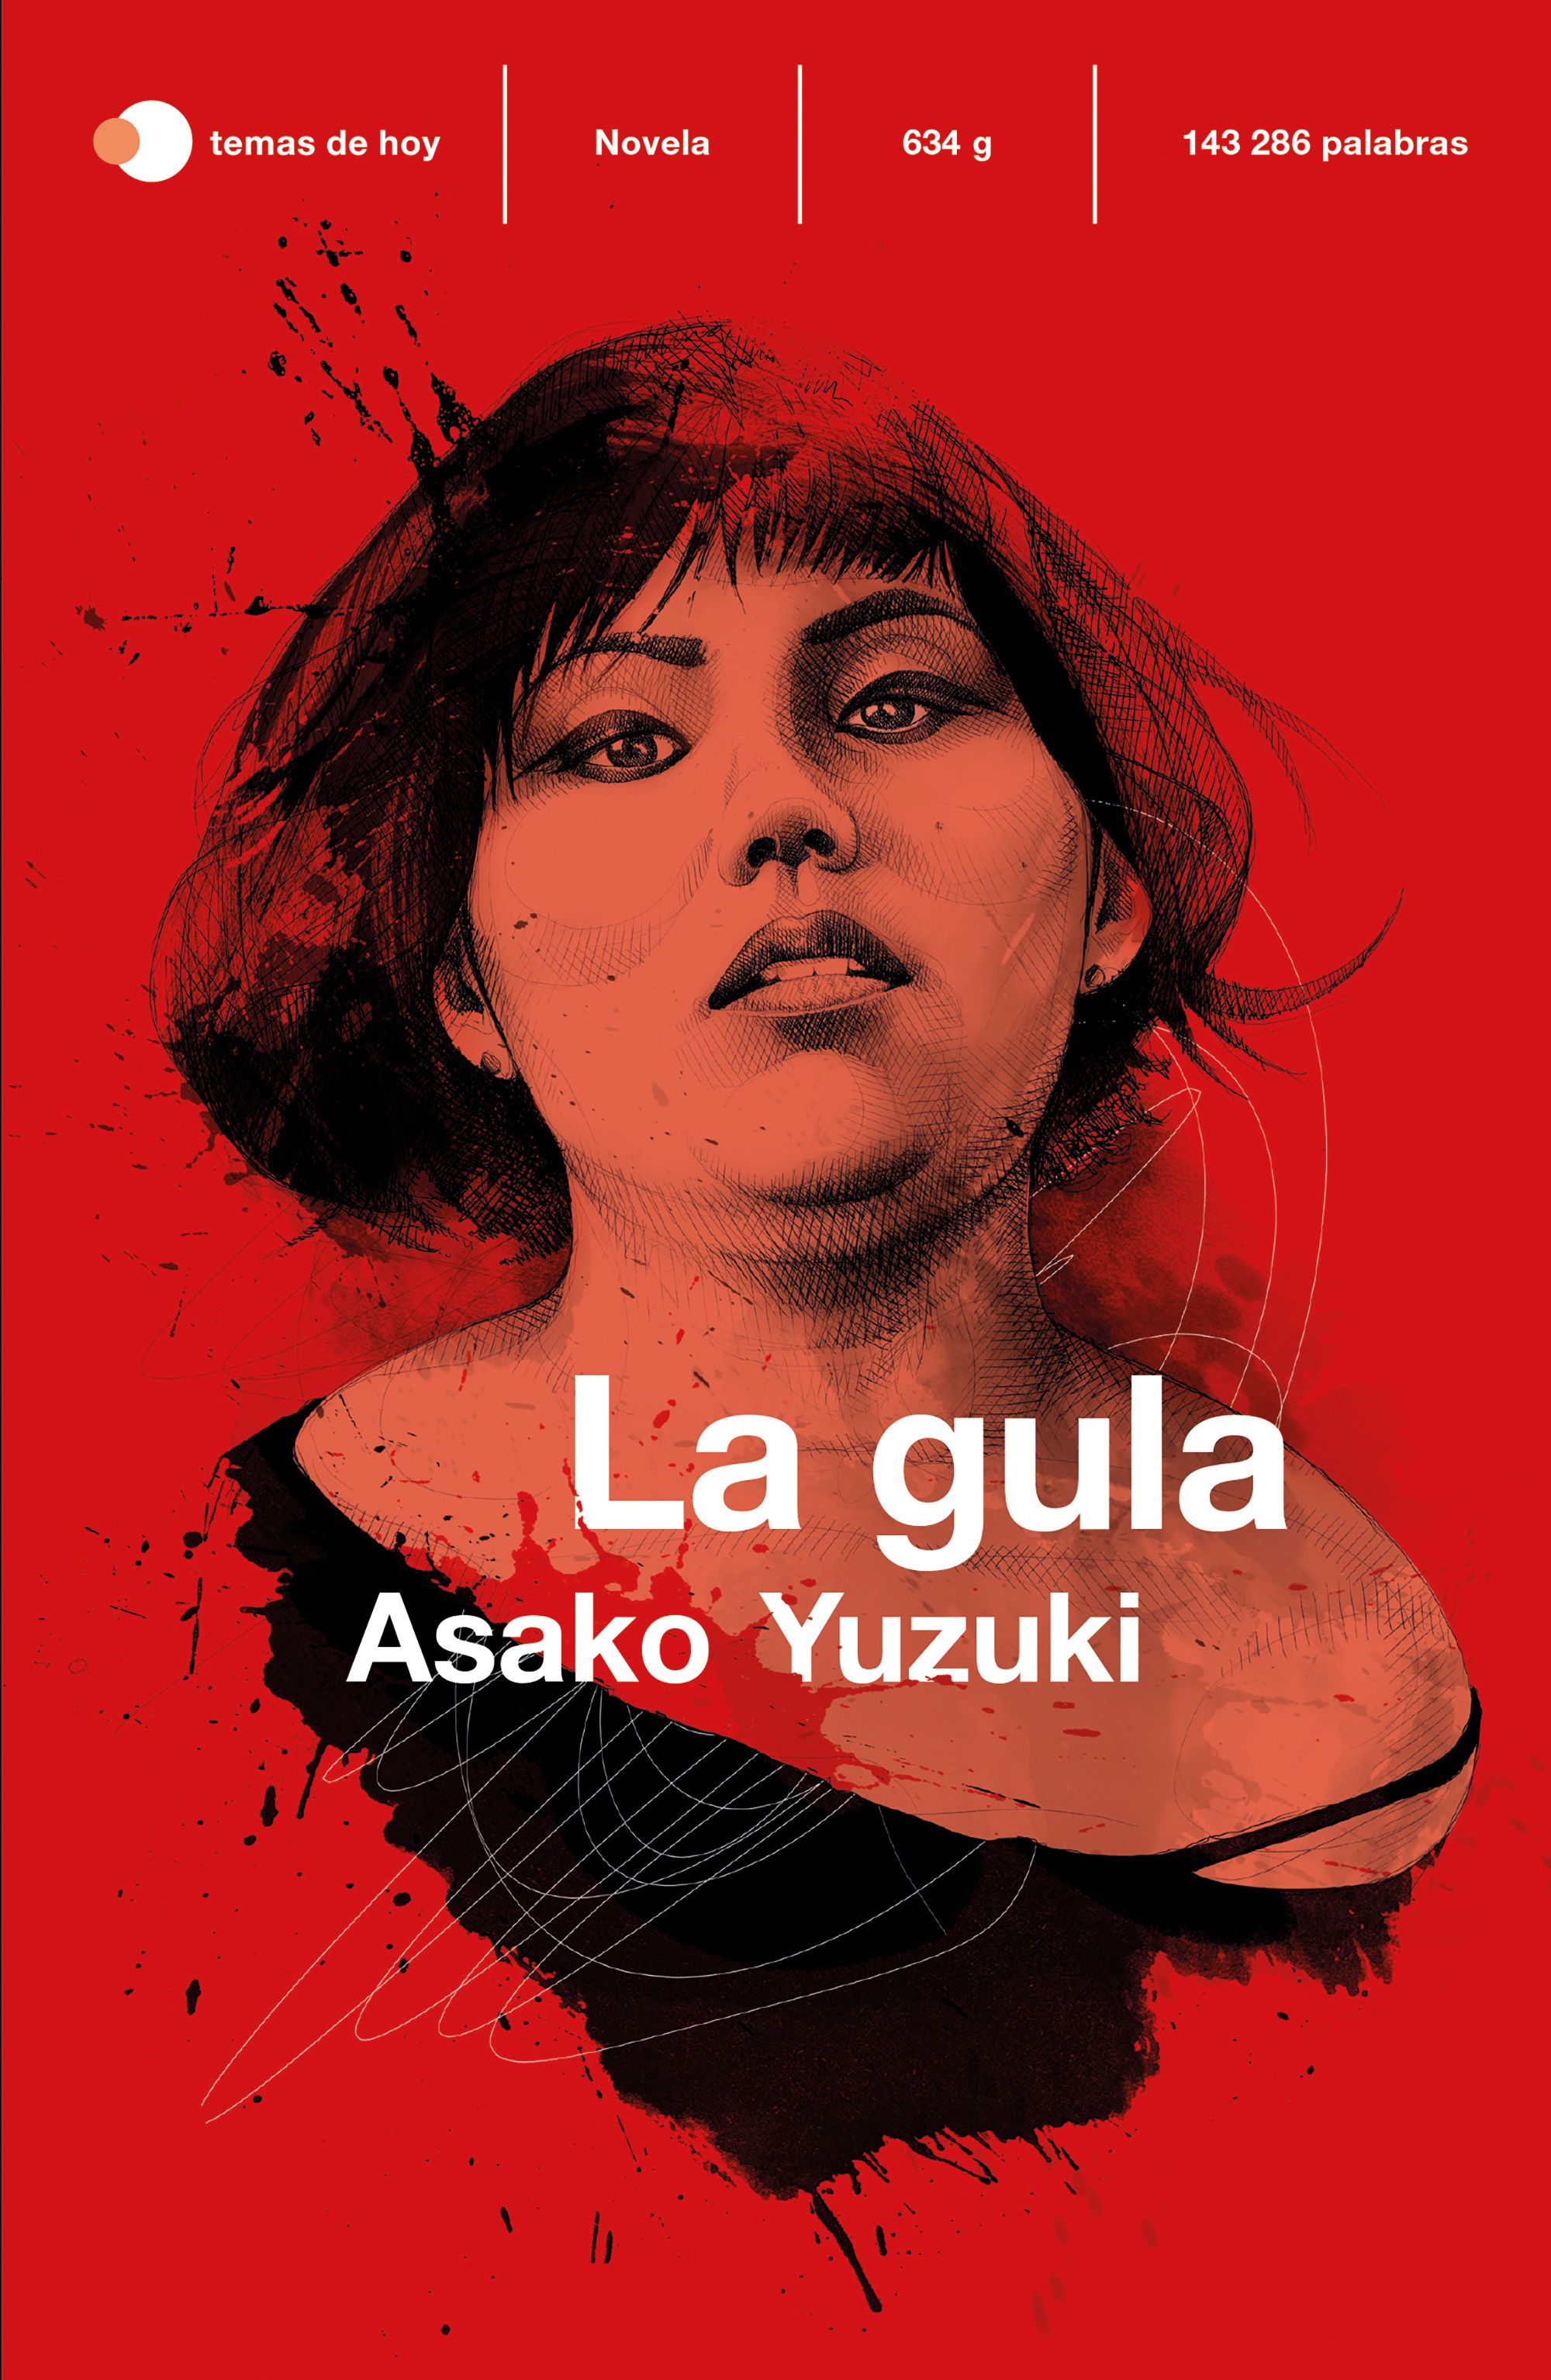 La gula - Asako Yuzuki | PlanetadeLibros